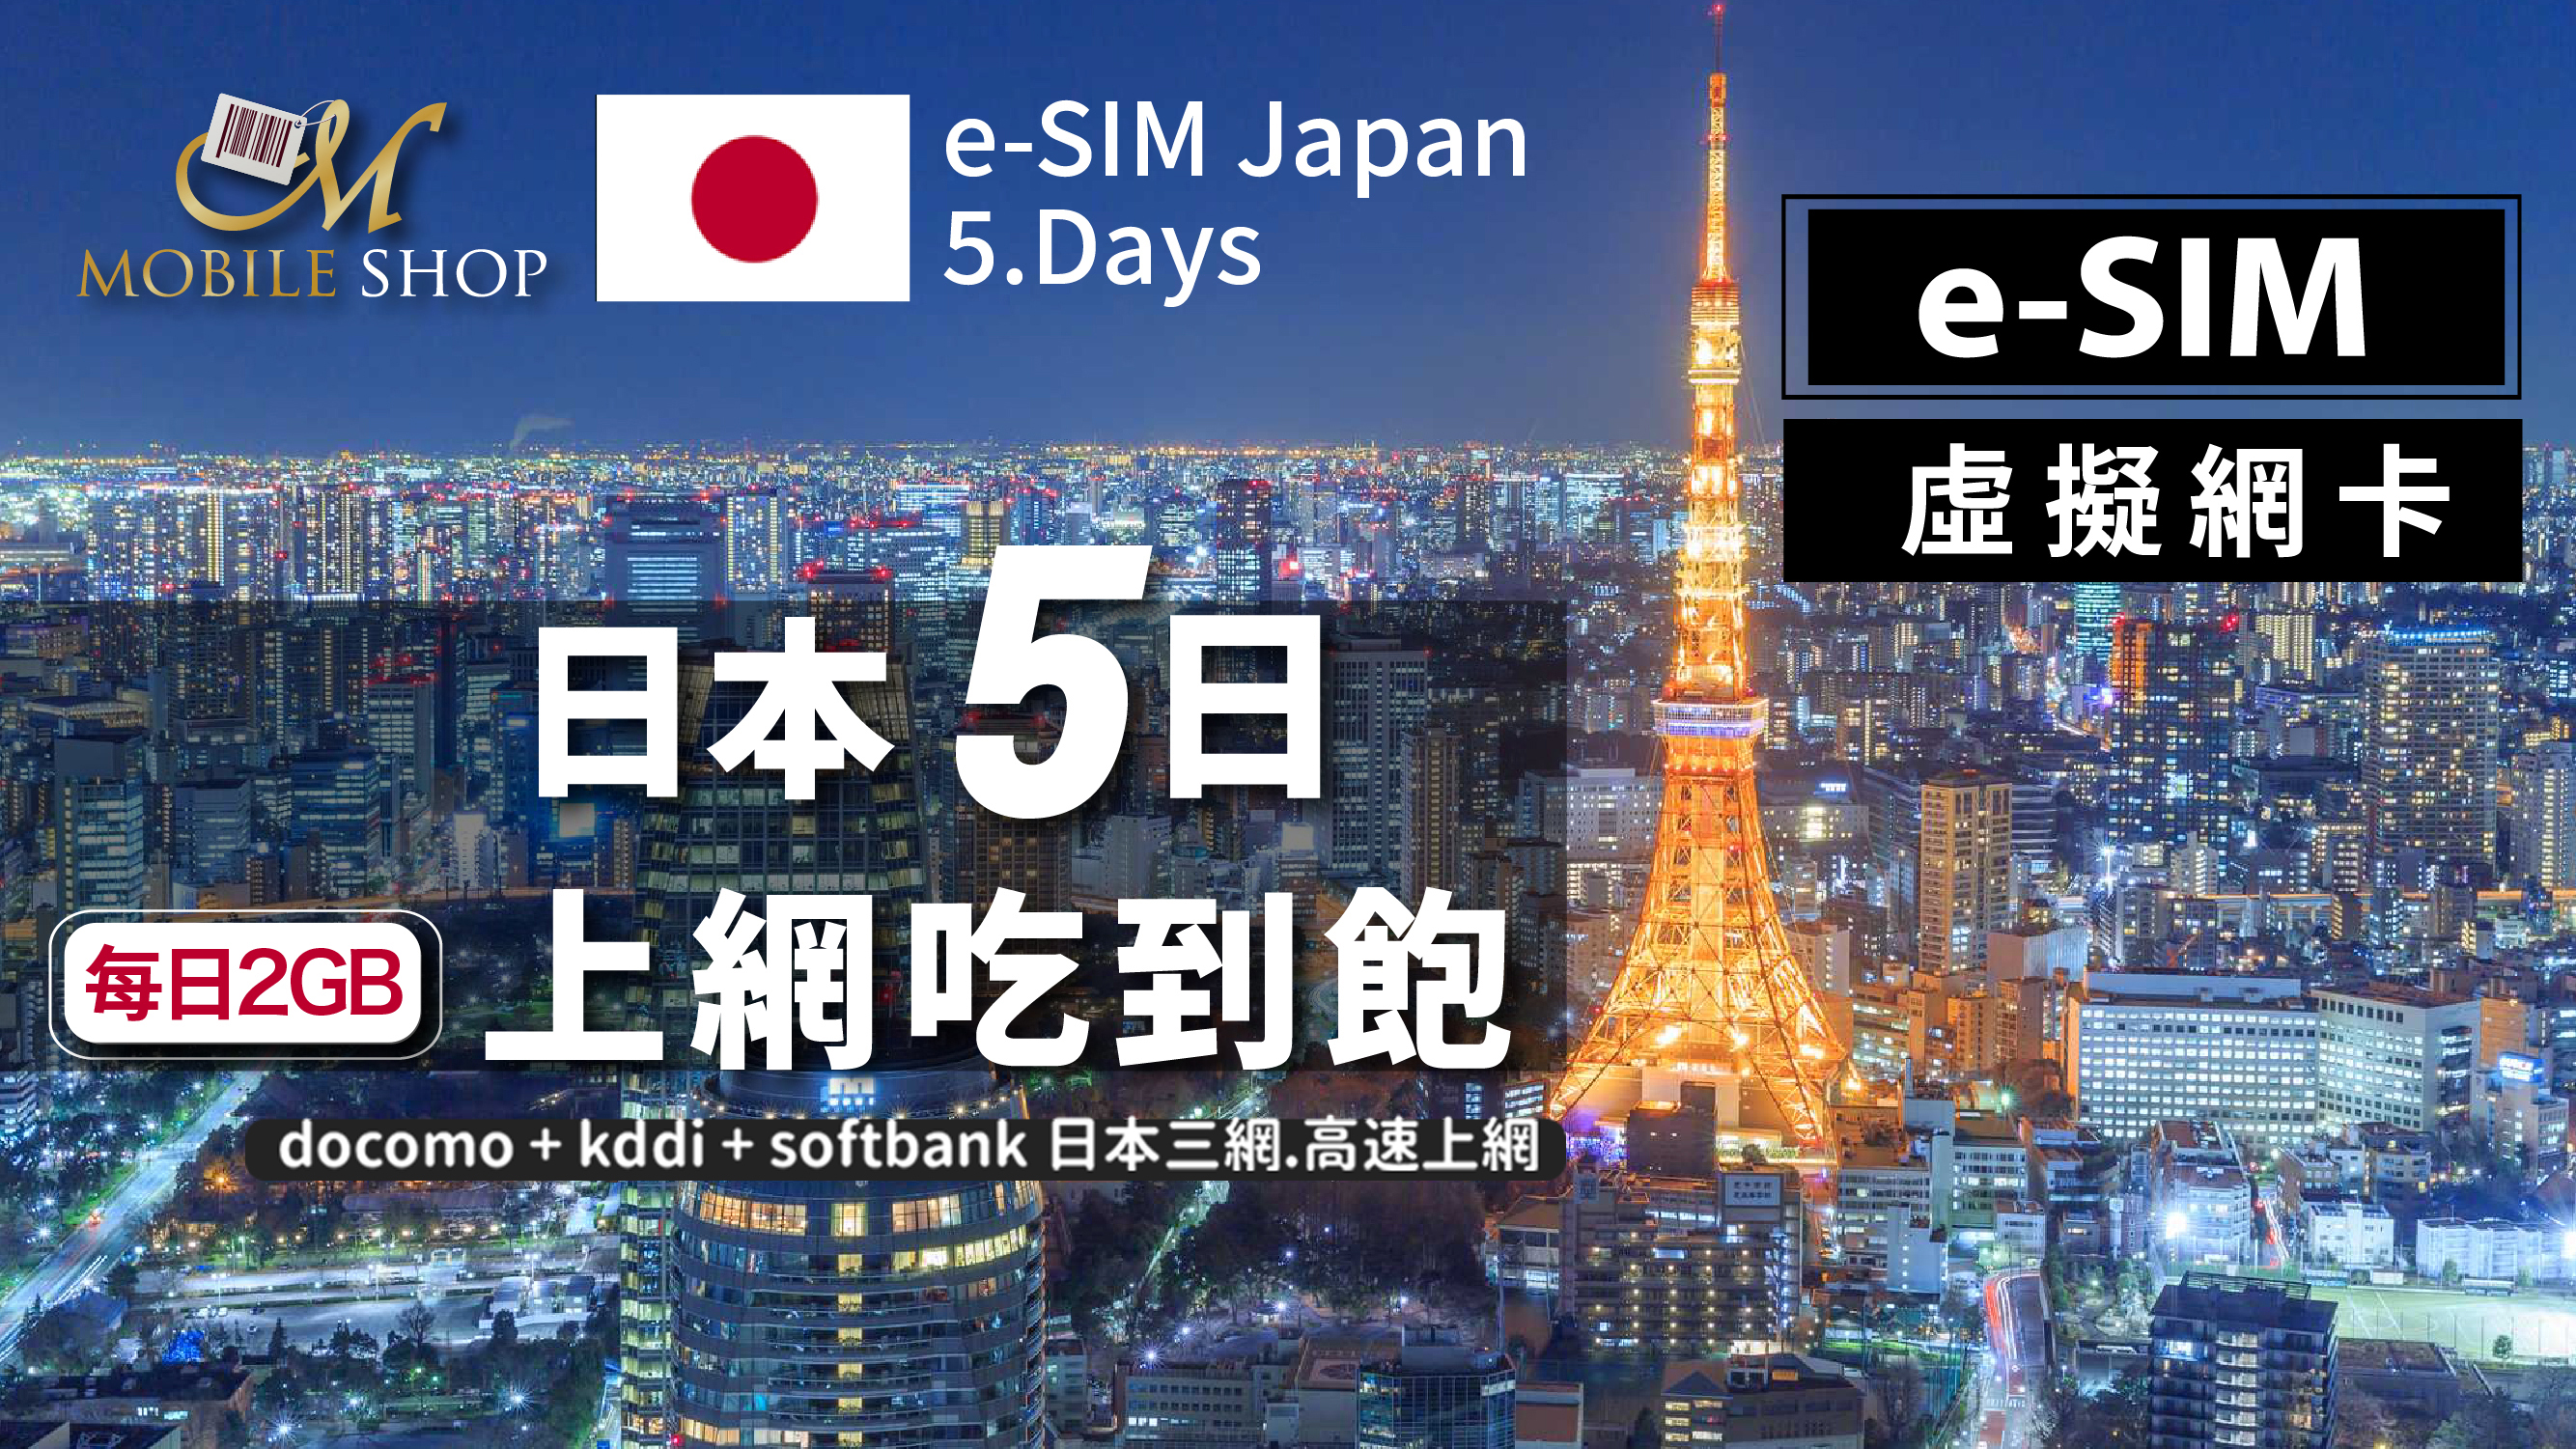 eSIM Japan 5days/2GB unlimited data